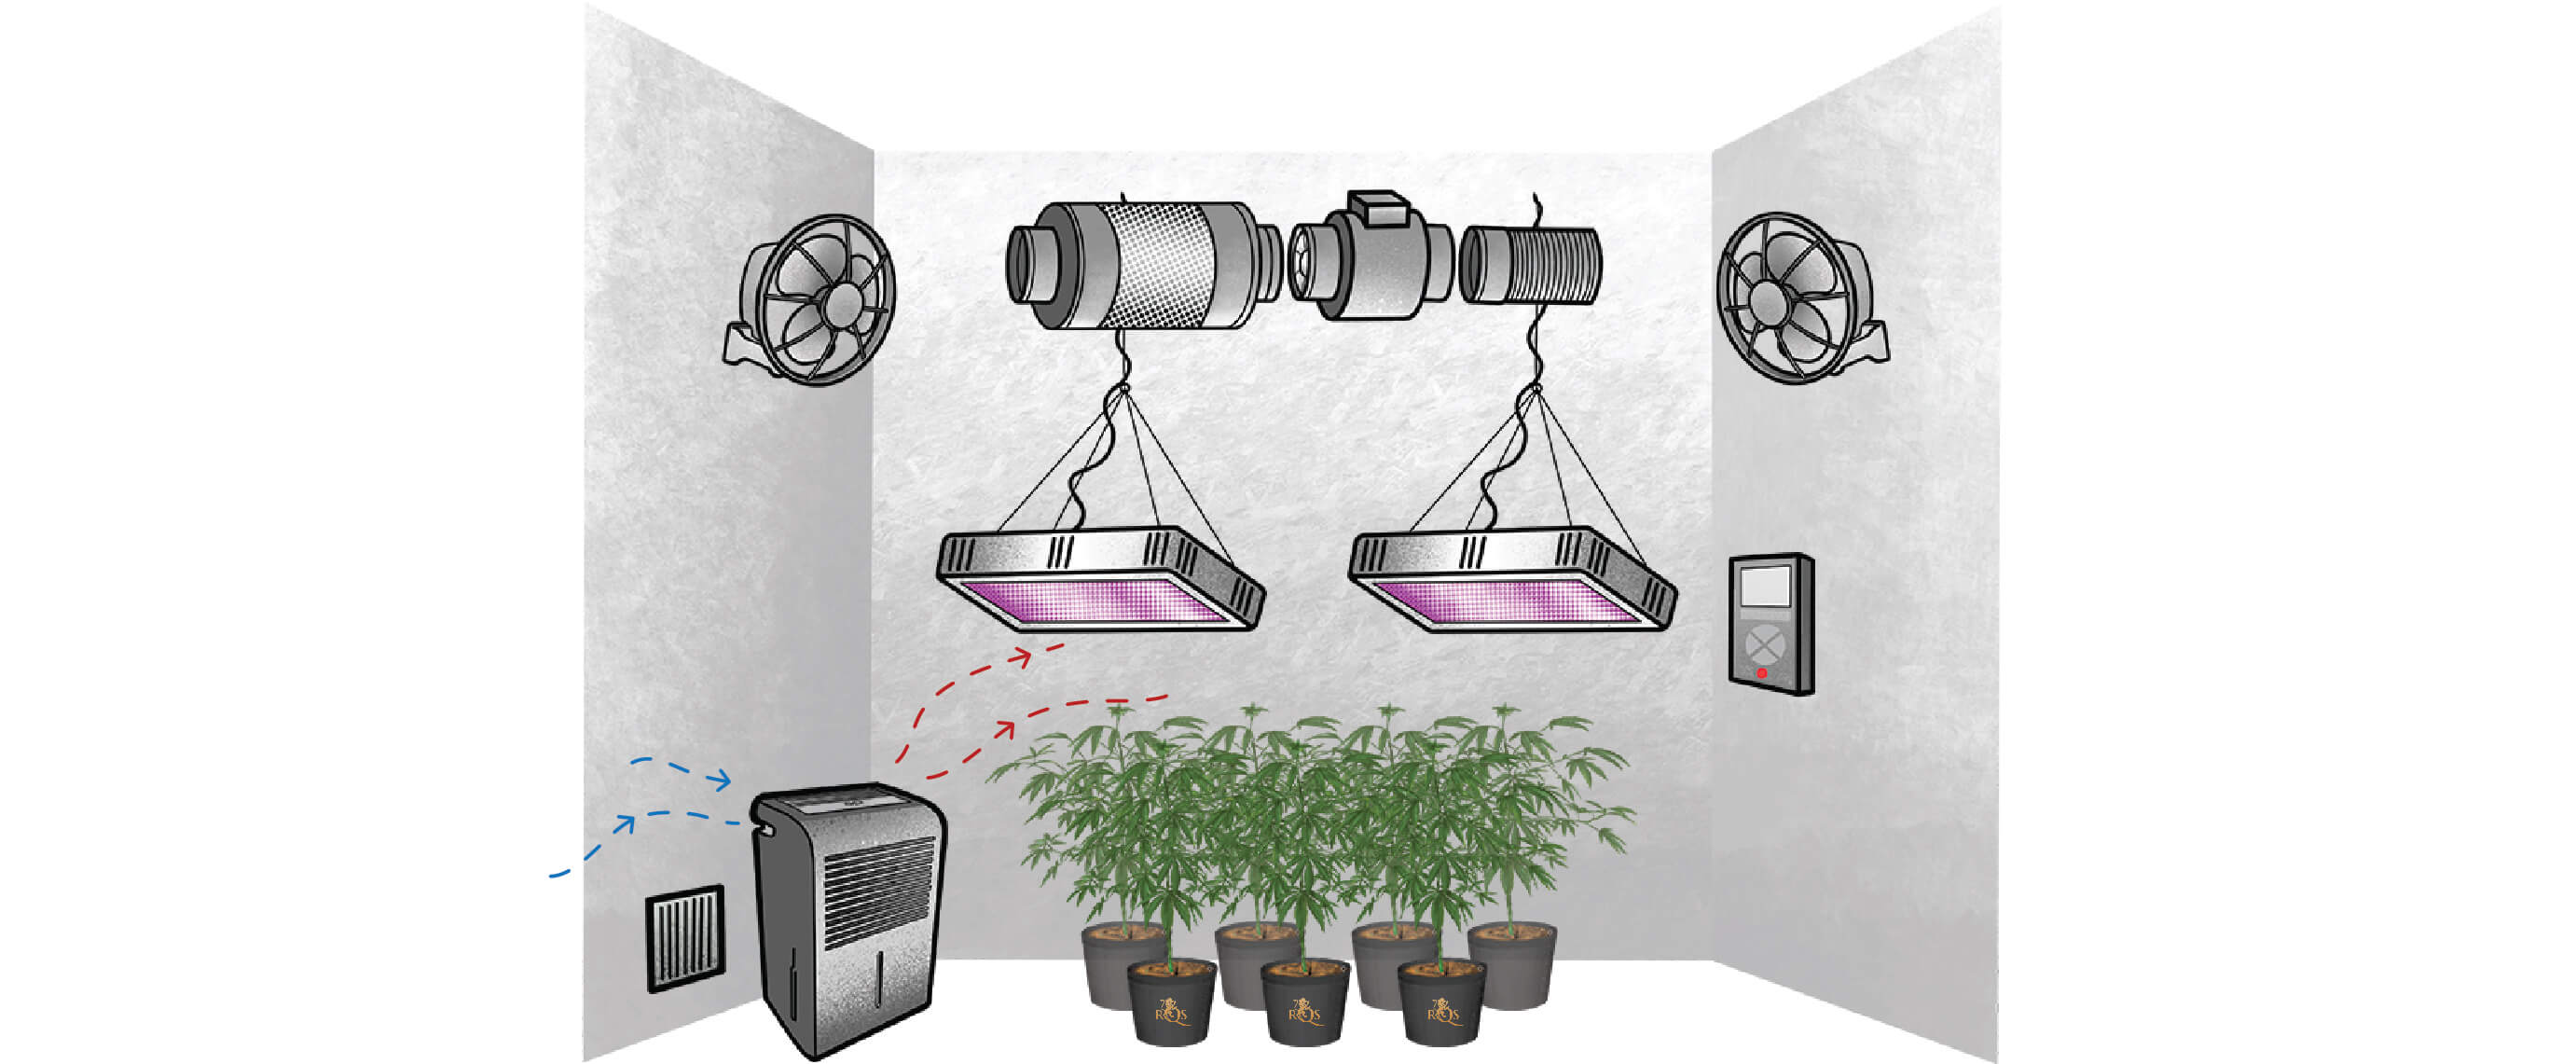 Cómo elegir el deshumidificador adecuado para cultivar marihuana